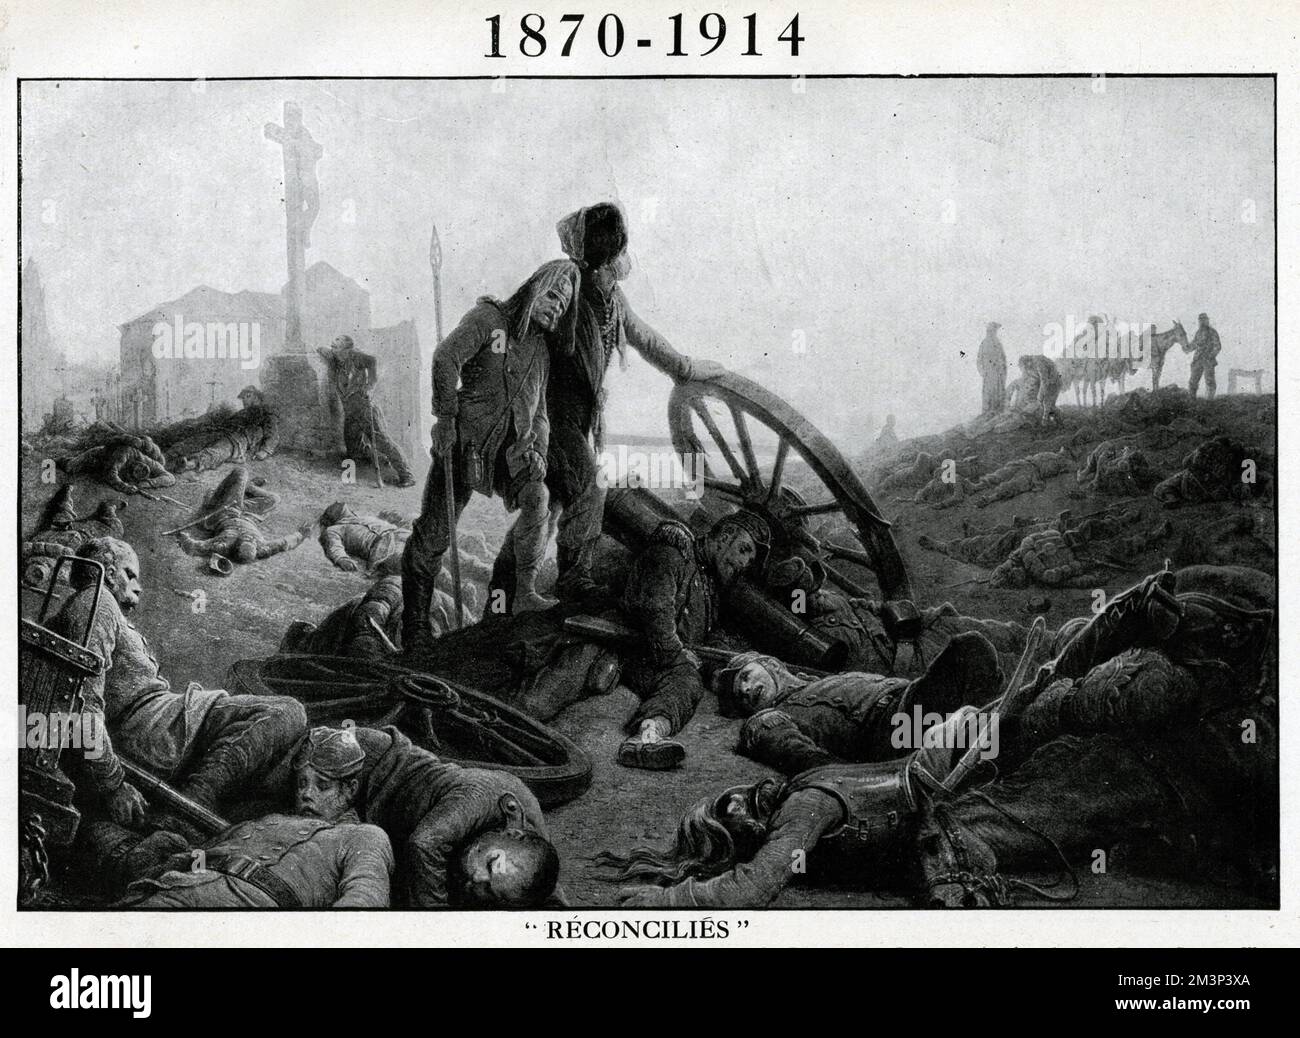 Une scène de dévastation après une bataille, avec le titre 1870-1914 -- une référence à deux périodes de l'histoire où la France et la Prusse étaient en conflit, la guerre franco-prussienne de 1870-1 et le début de la première Guerre mondiale. Dit être basé sur un tableau de Gustave Dore. 1914 Banque D'Images